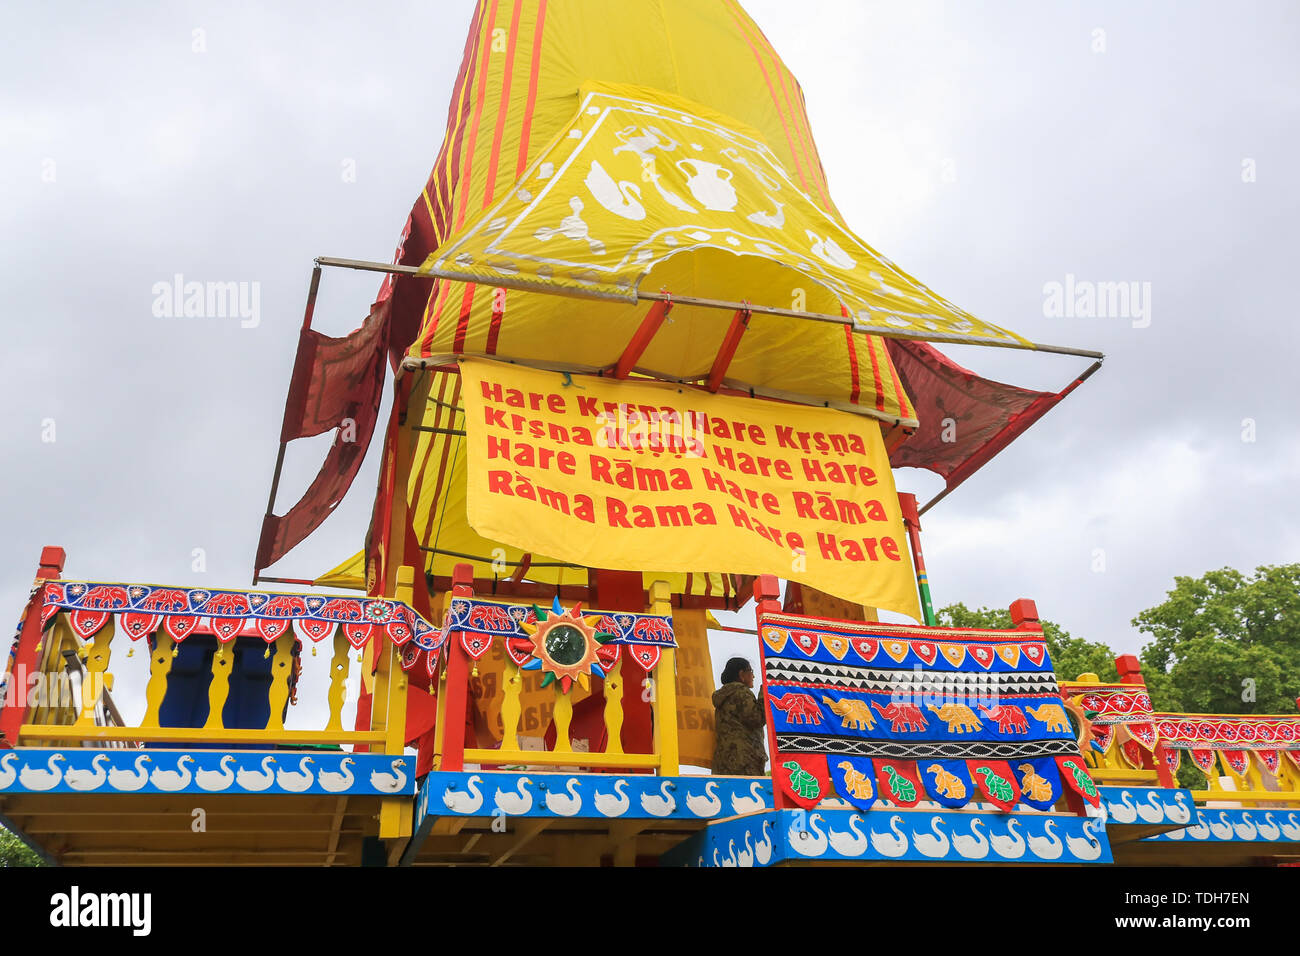 Londres, Royaume-Uni. 16 juin 2019. Trois énormes en bois décoré deula-char en forme (Ratha) prêt à être tiré par les pèlerins et les dévots de Hyde Park Corner à Trafalgar Square pour célébrer le 51e anniversaire de l'événement annuel à l'Rathayatra Char Krishna festival. - Rathayatra les chars en bois transportant des divinités d'Aline, Balarama et Subhadra qui sont tirés à la main par les pèlerins et les dévots Crédit : amer ghazzal/Alamy Live News Banque D'Images